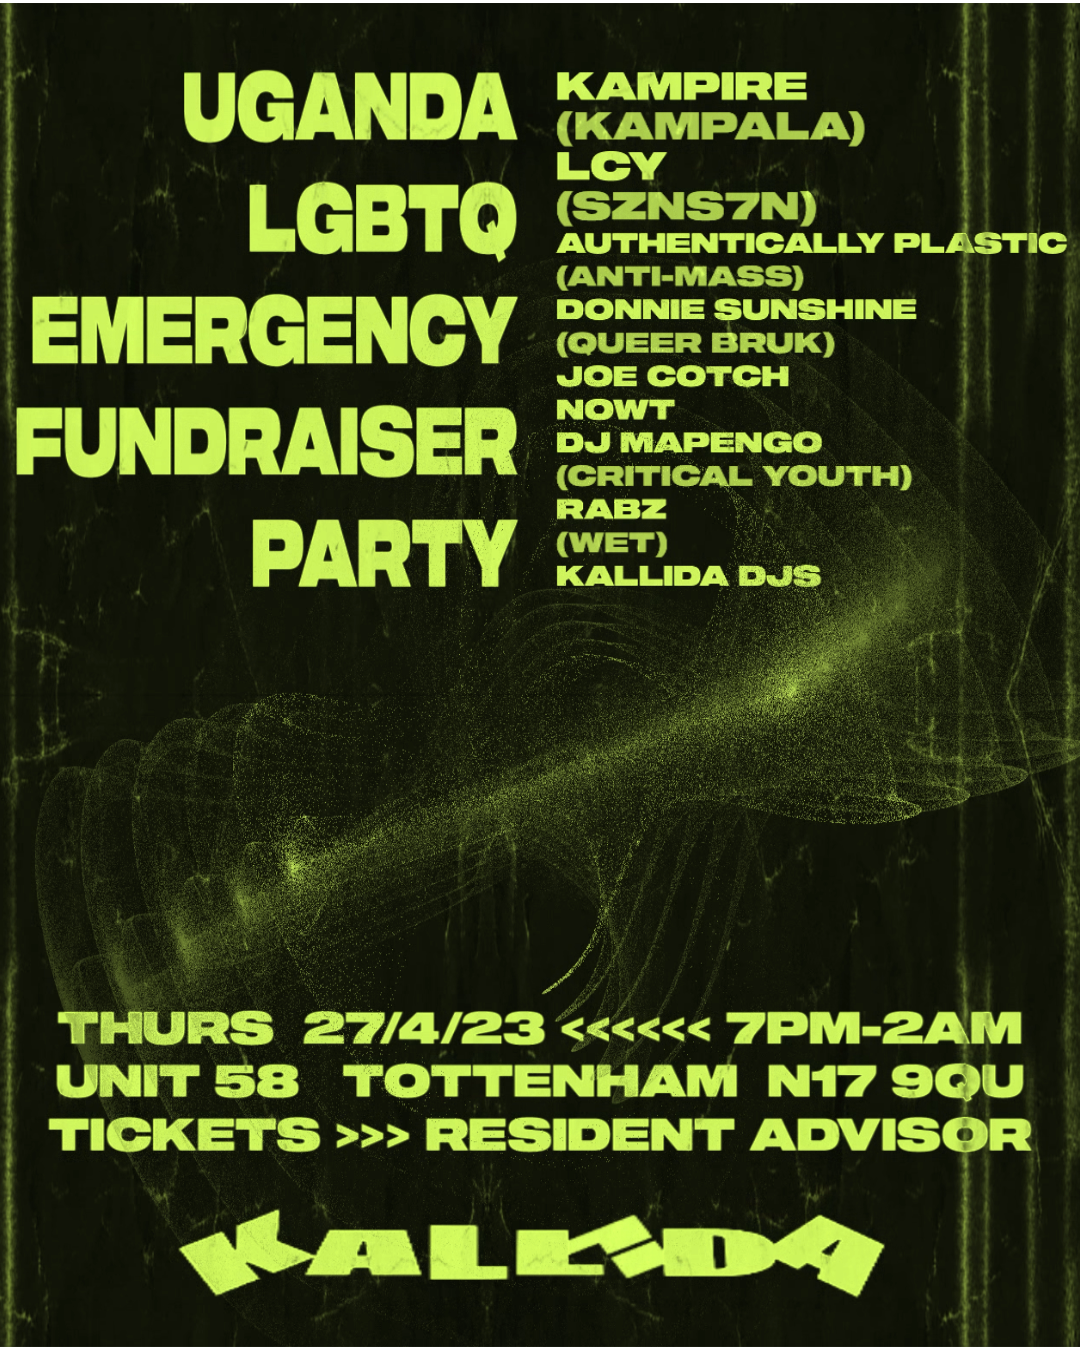 Uganda LGBTQ Emergency Fundraiser Party - Página frontal